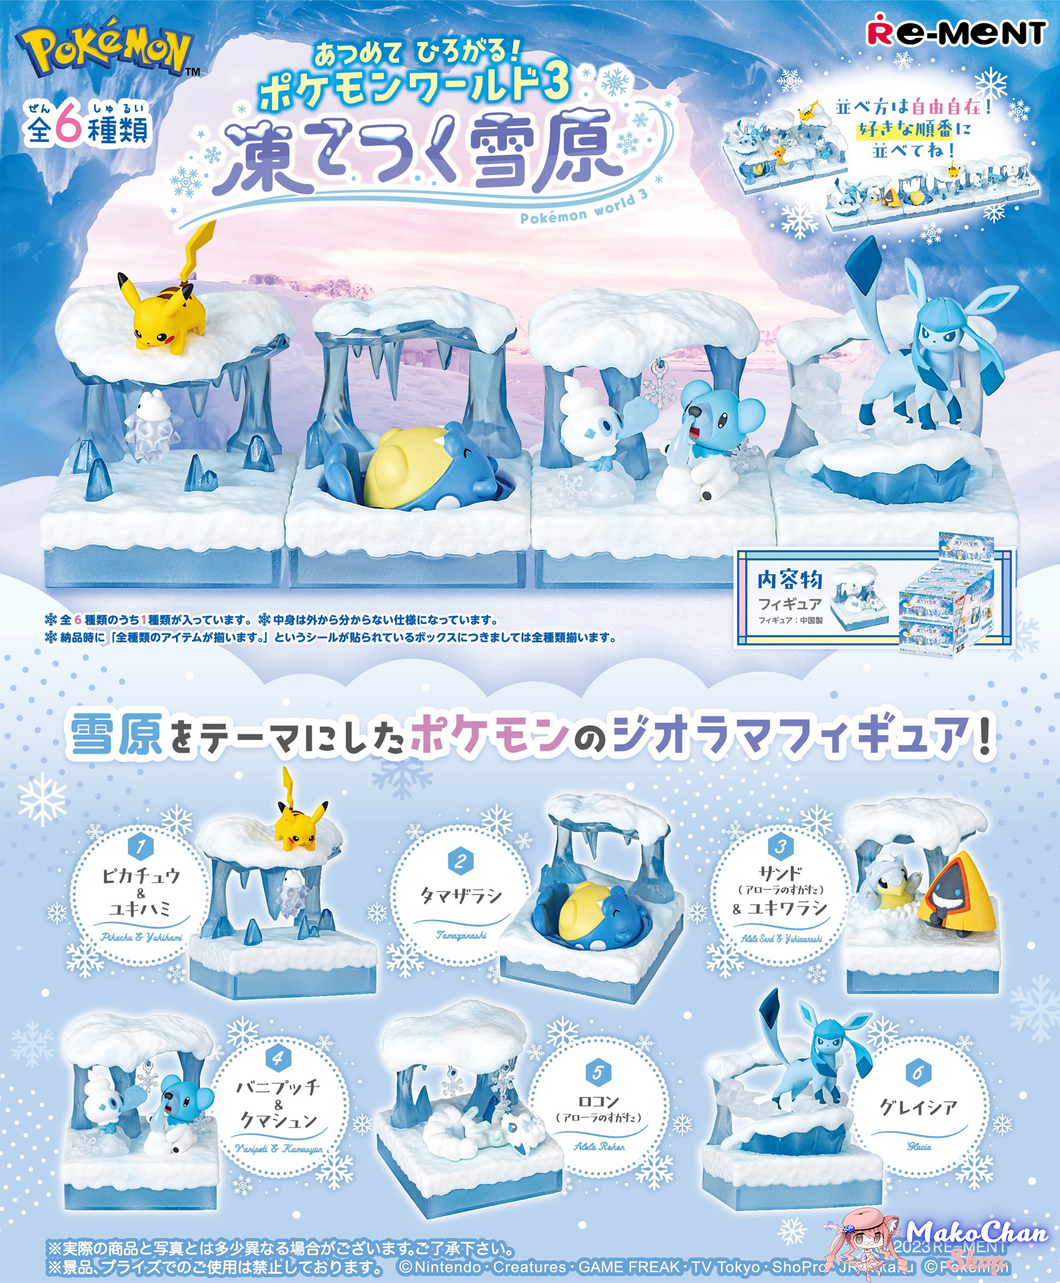 Rement Pokemon Thu thập và mở rộng! Pokemon World 3: Cánh đồng tuyết đóng băng